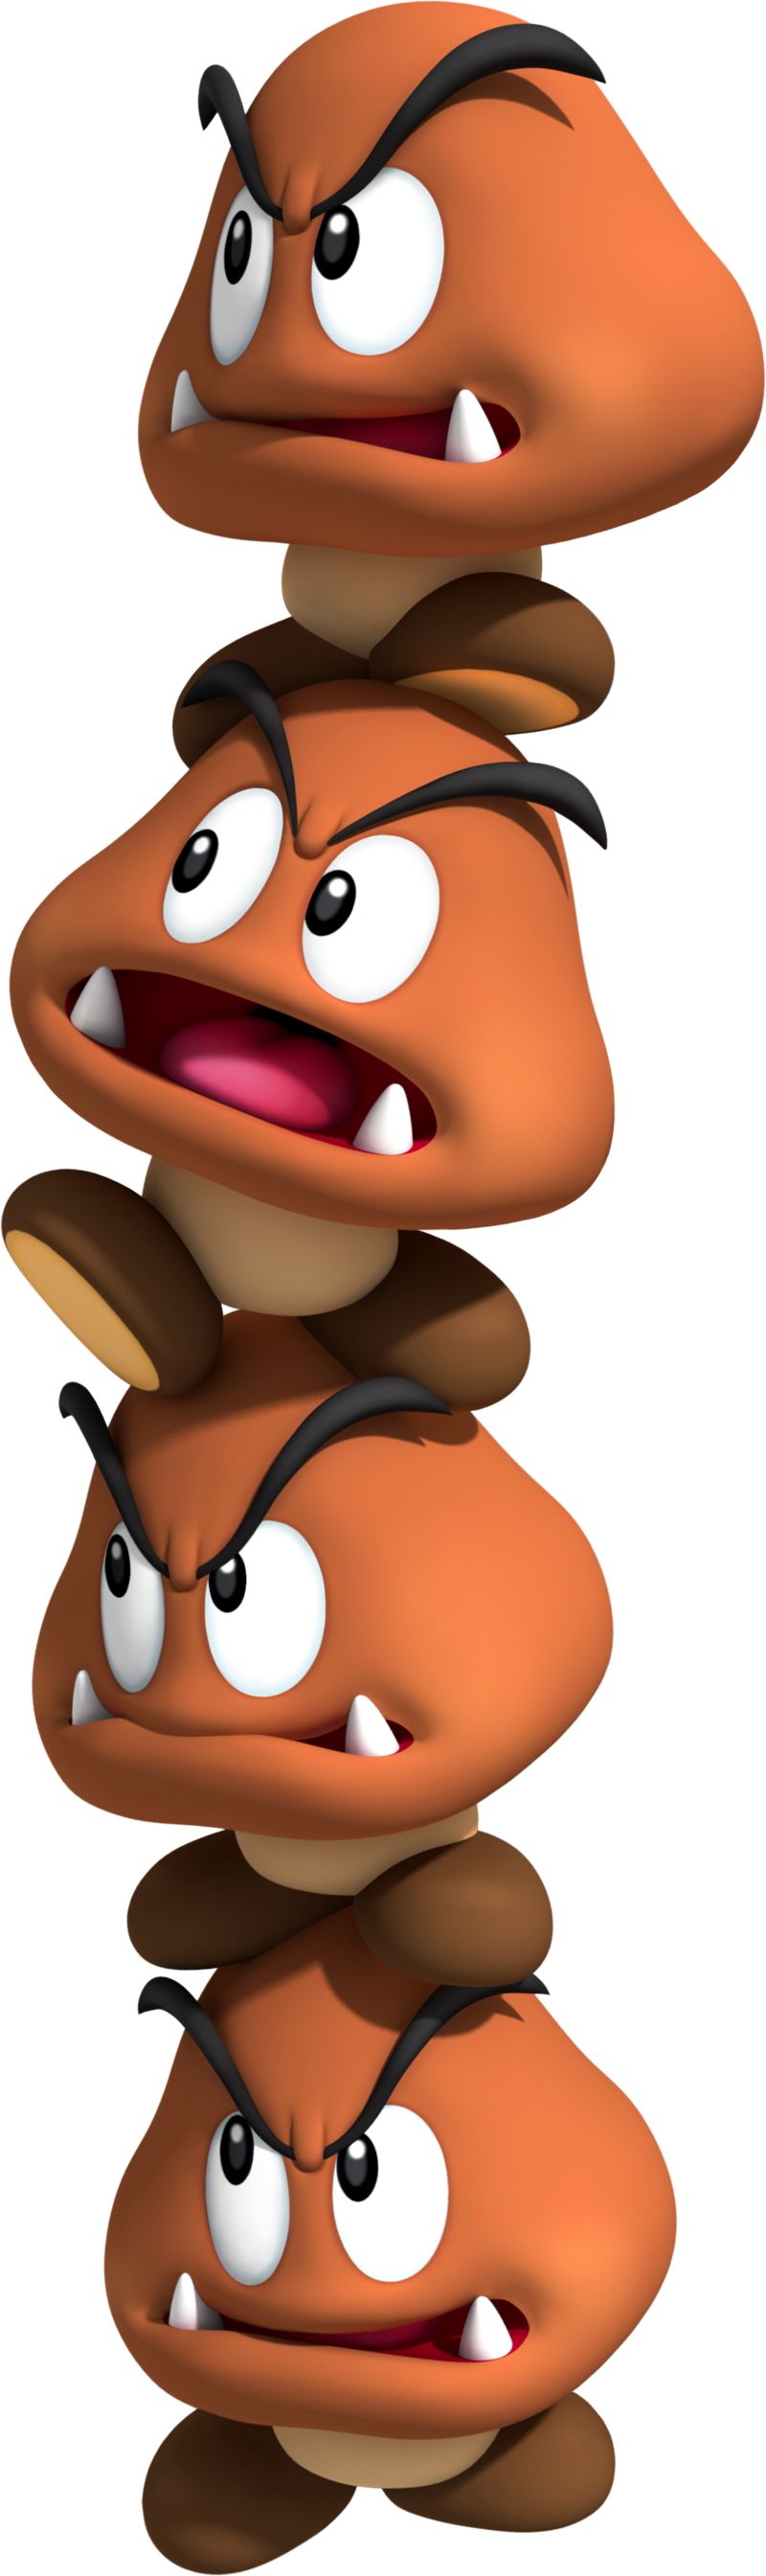 Goomba (film species) - Super Mario Wiki, the Mario encyclopedia